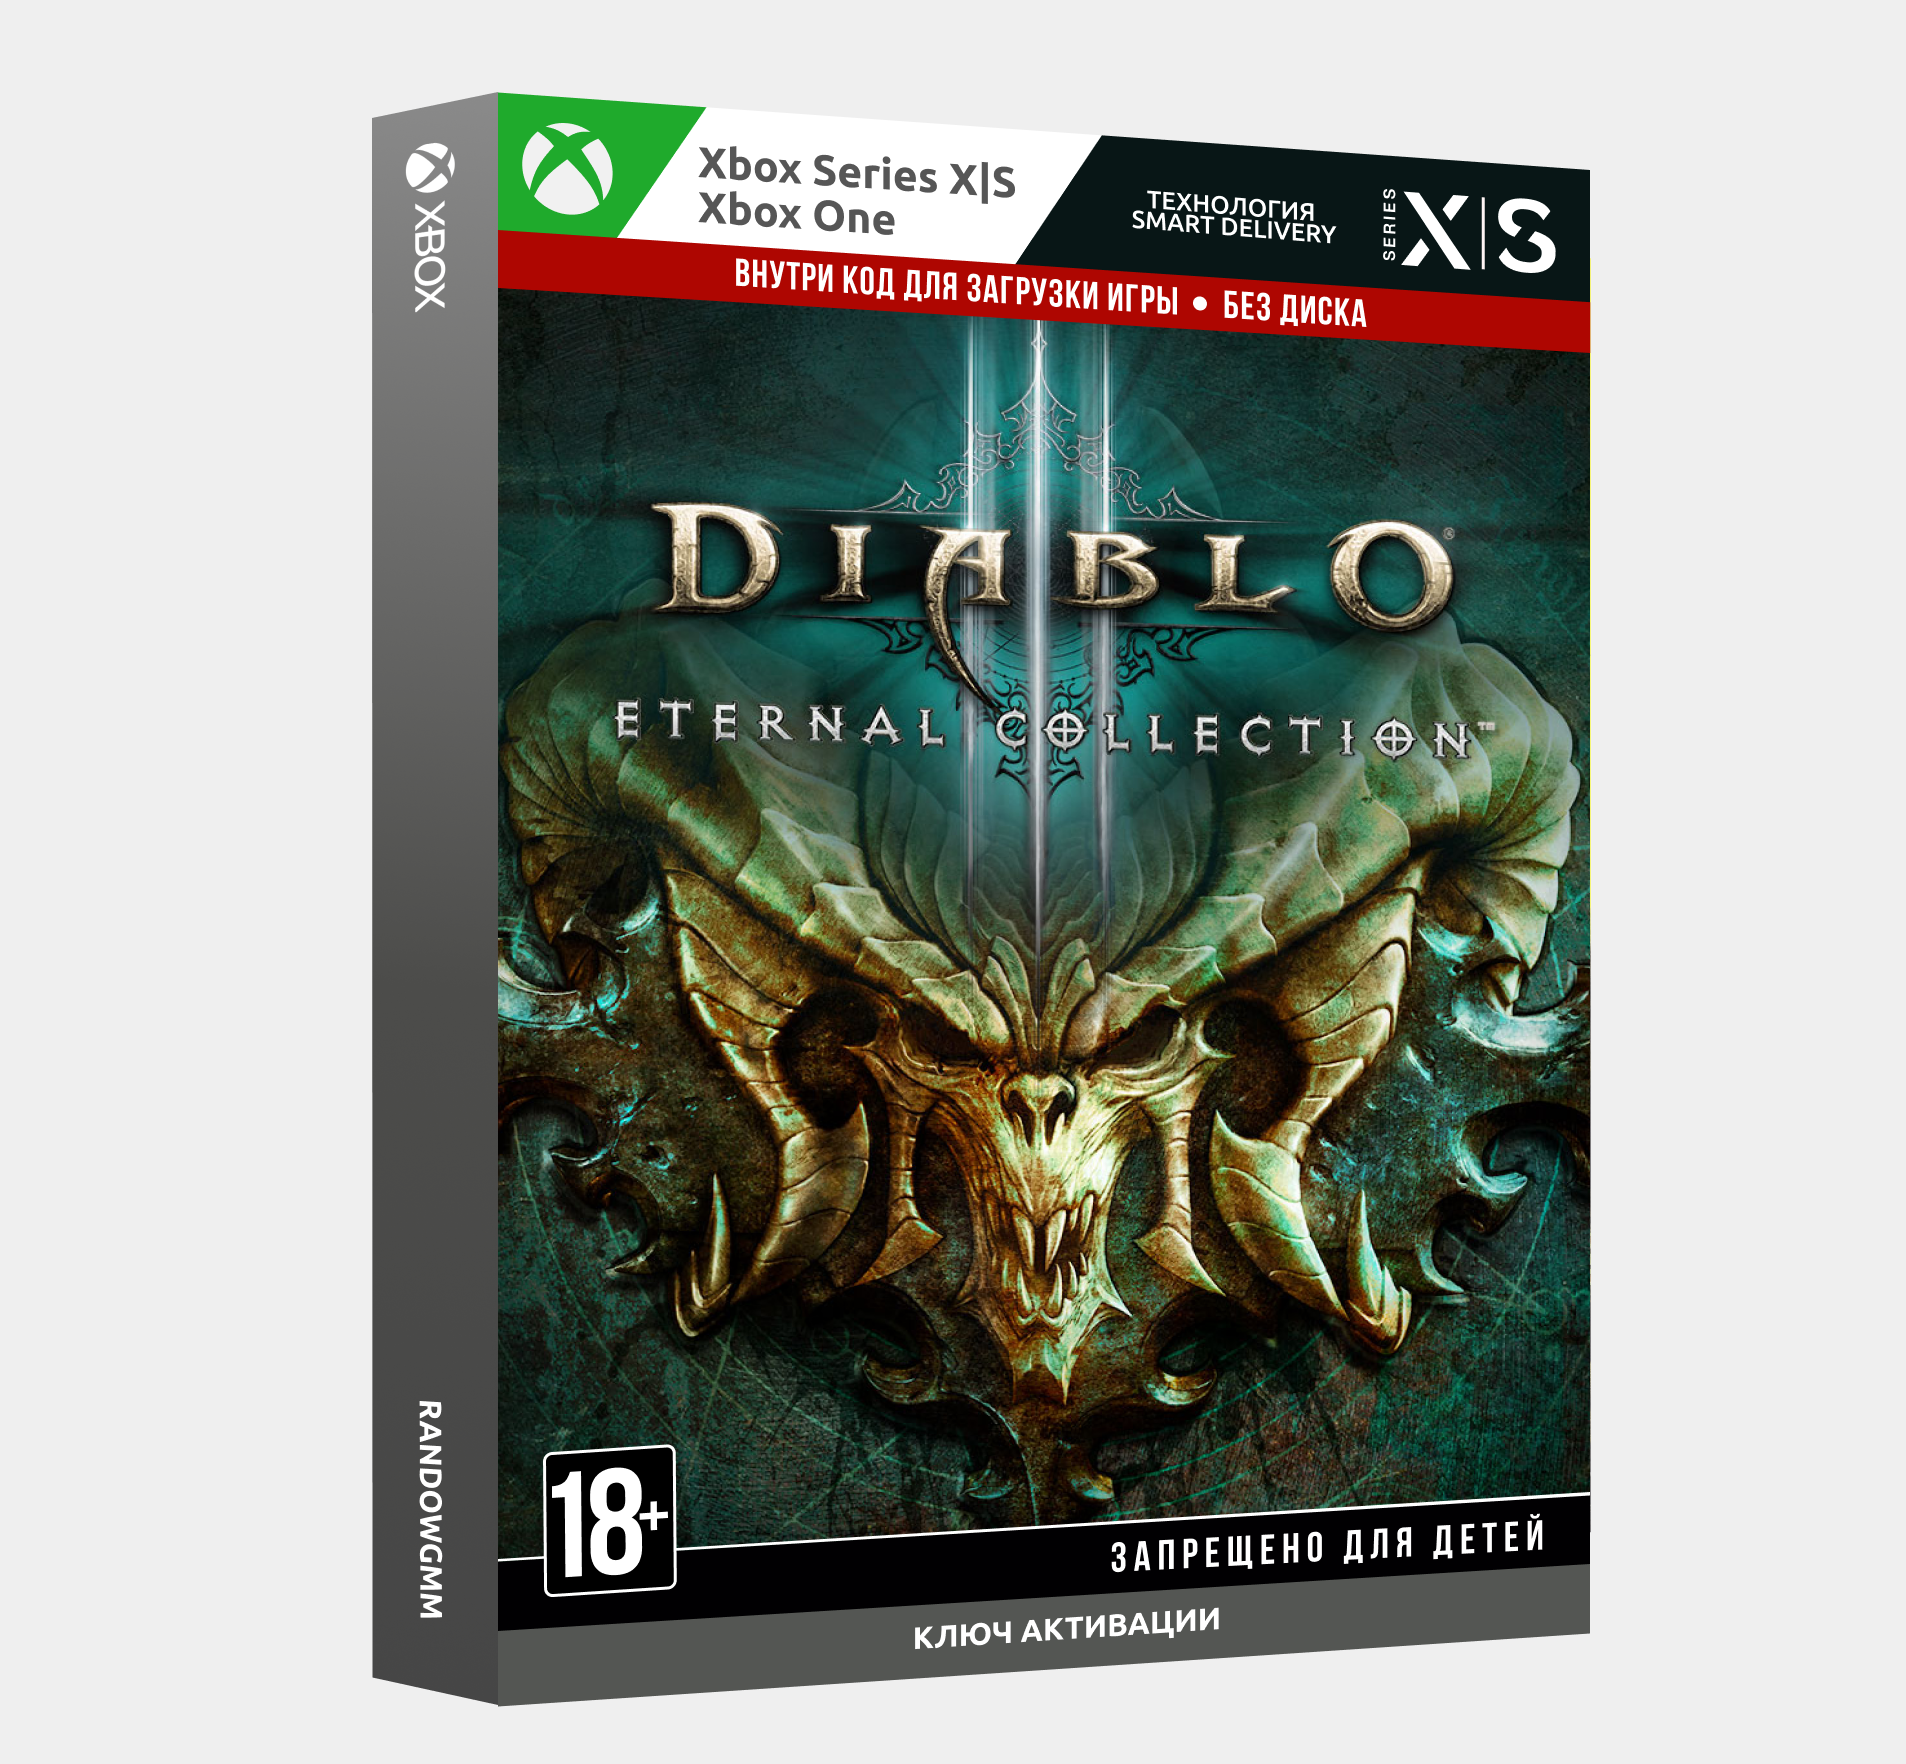 Diablo xbox купить. Diablo 3 диск Xbox one. Diablo III: Eternal collection Xbox one/Series. Diablo 3 Eternal collection Xbox. Diablo 3 Eternal collection Xbox one.